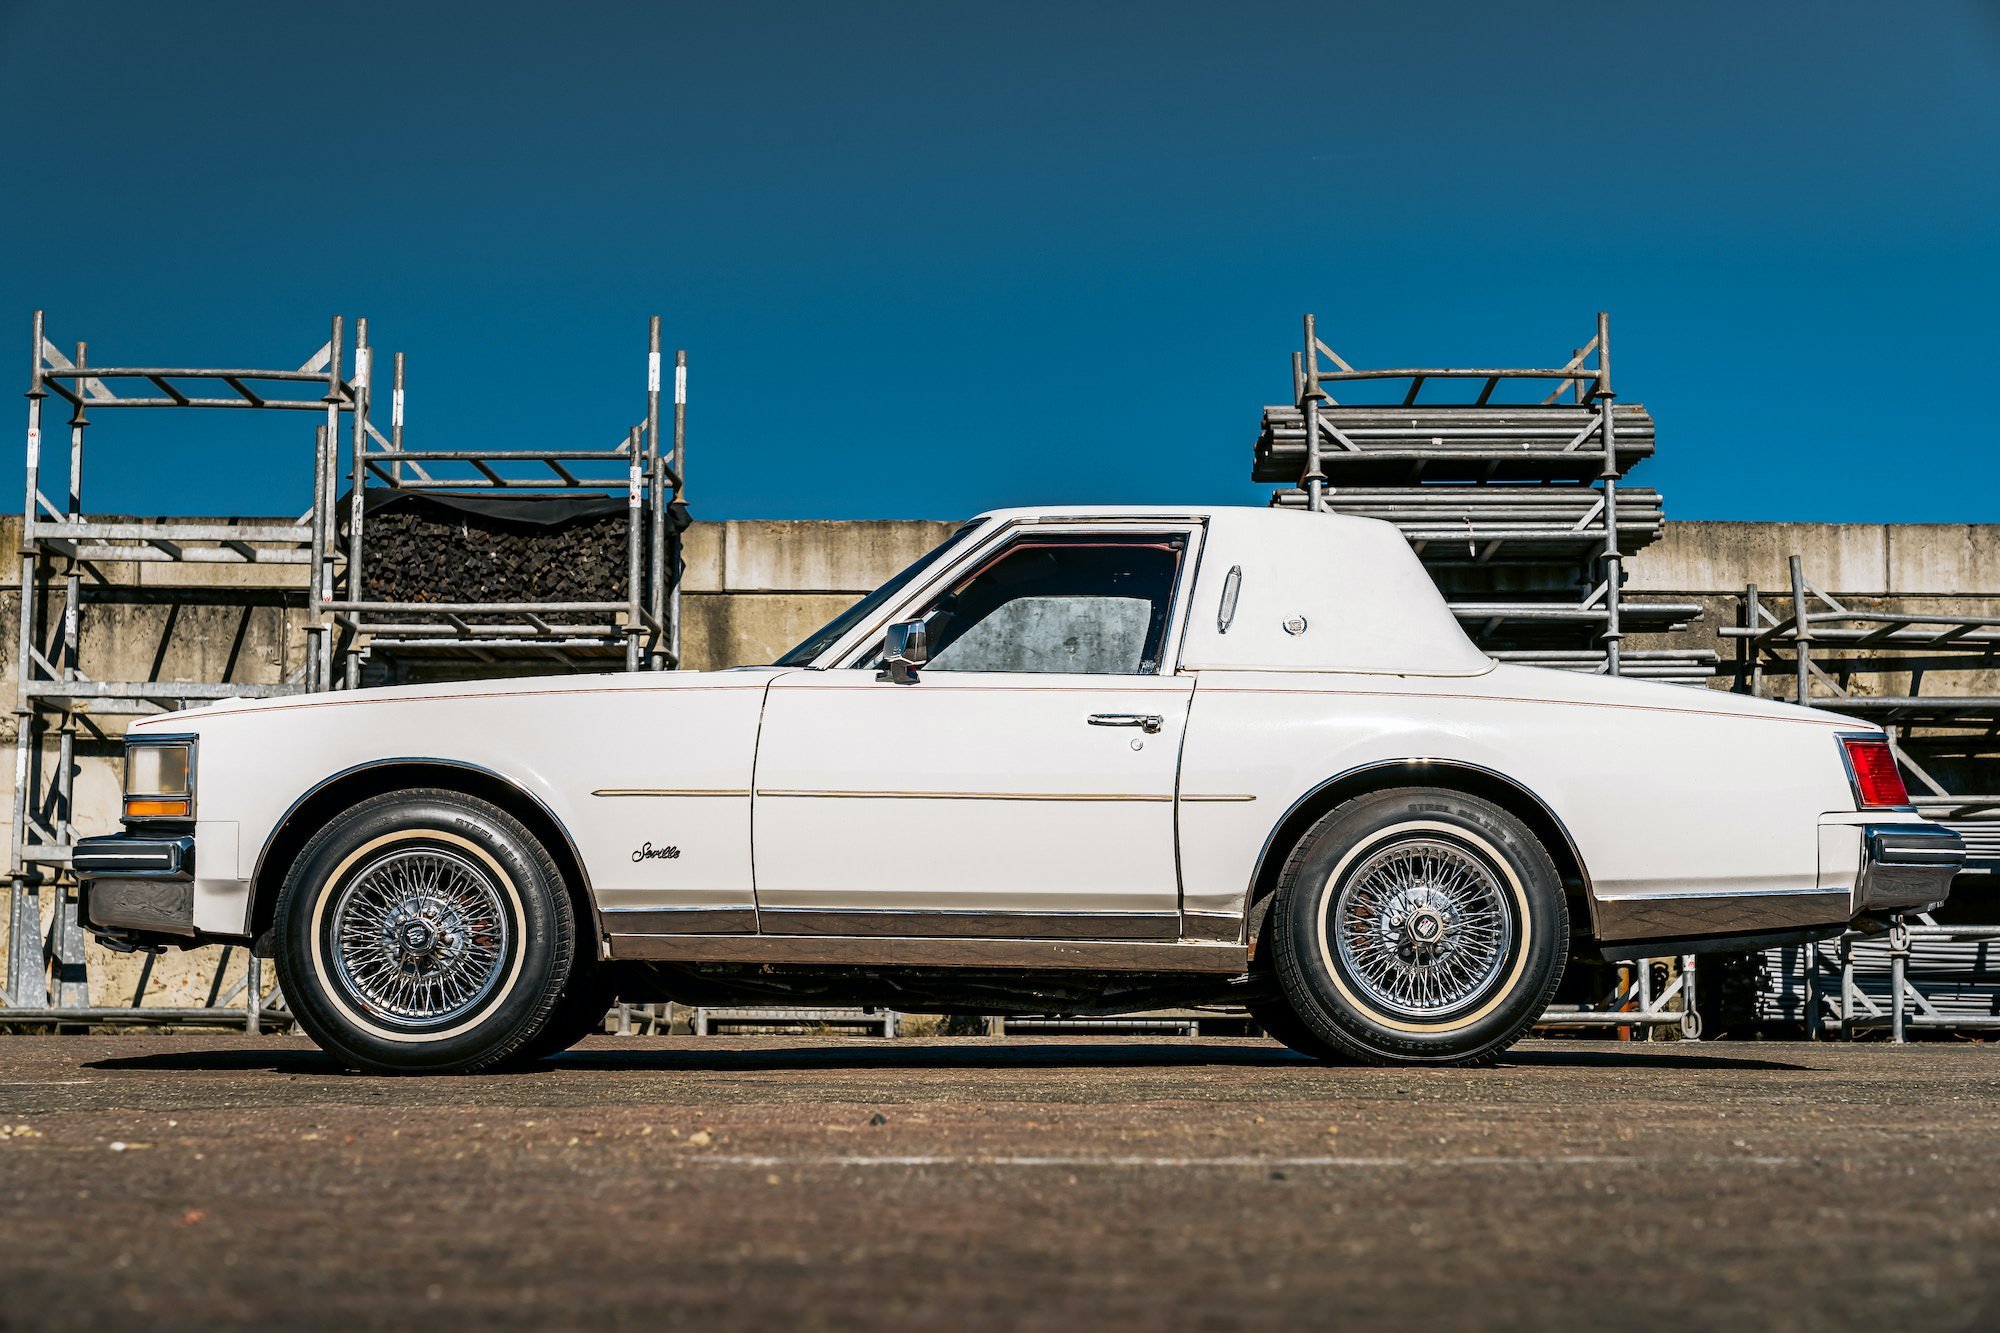 The "Milan Coupe" – A Rare Shortened 1979 Cadillac Seville